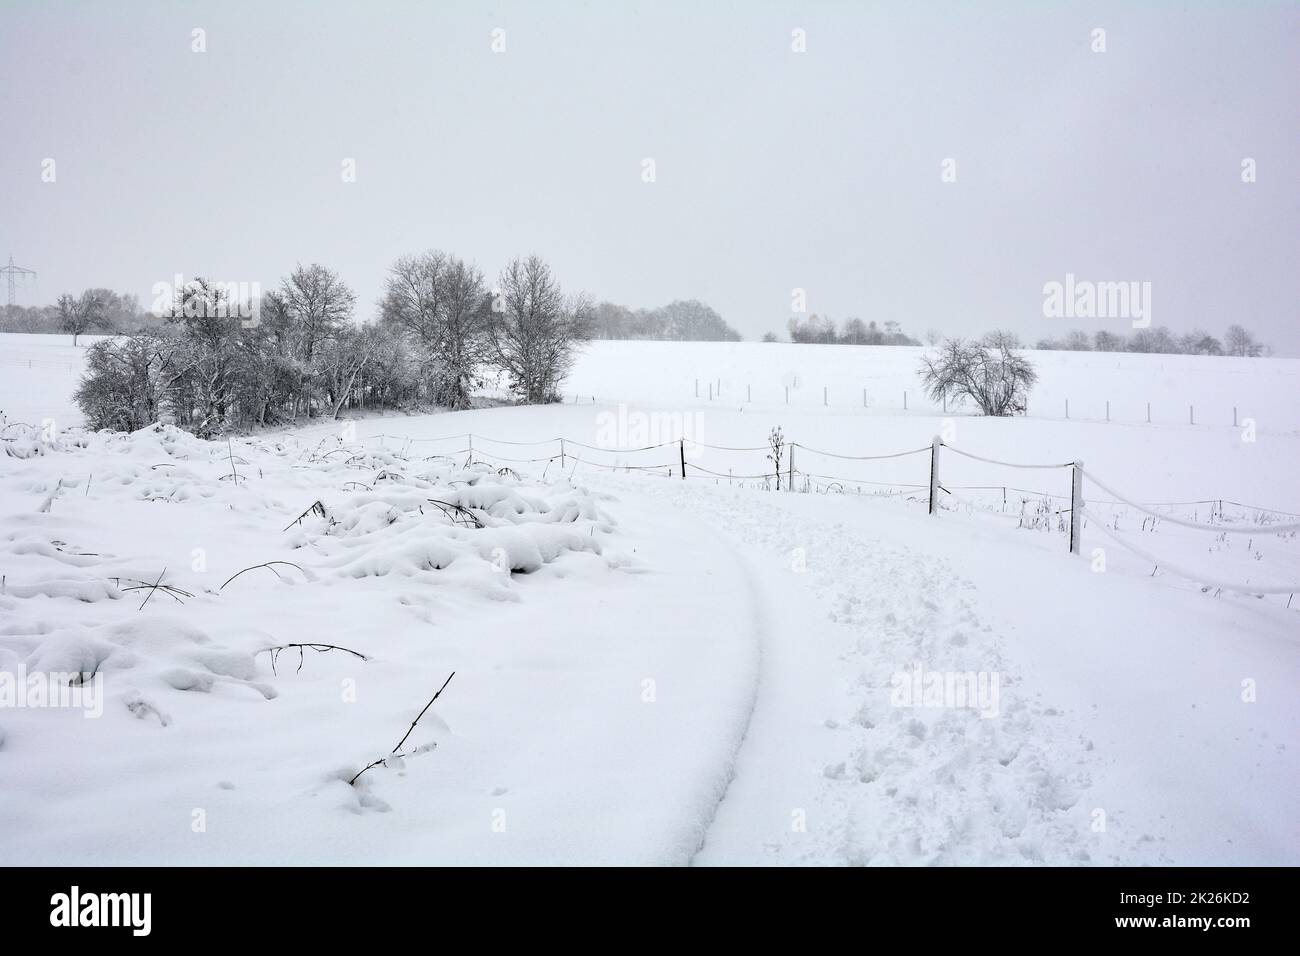 Paesaggio invernale con recinzione, alberi e neve Foto Stock